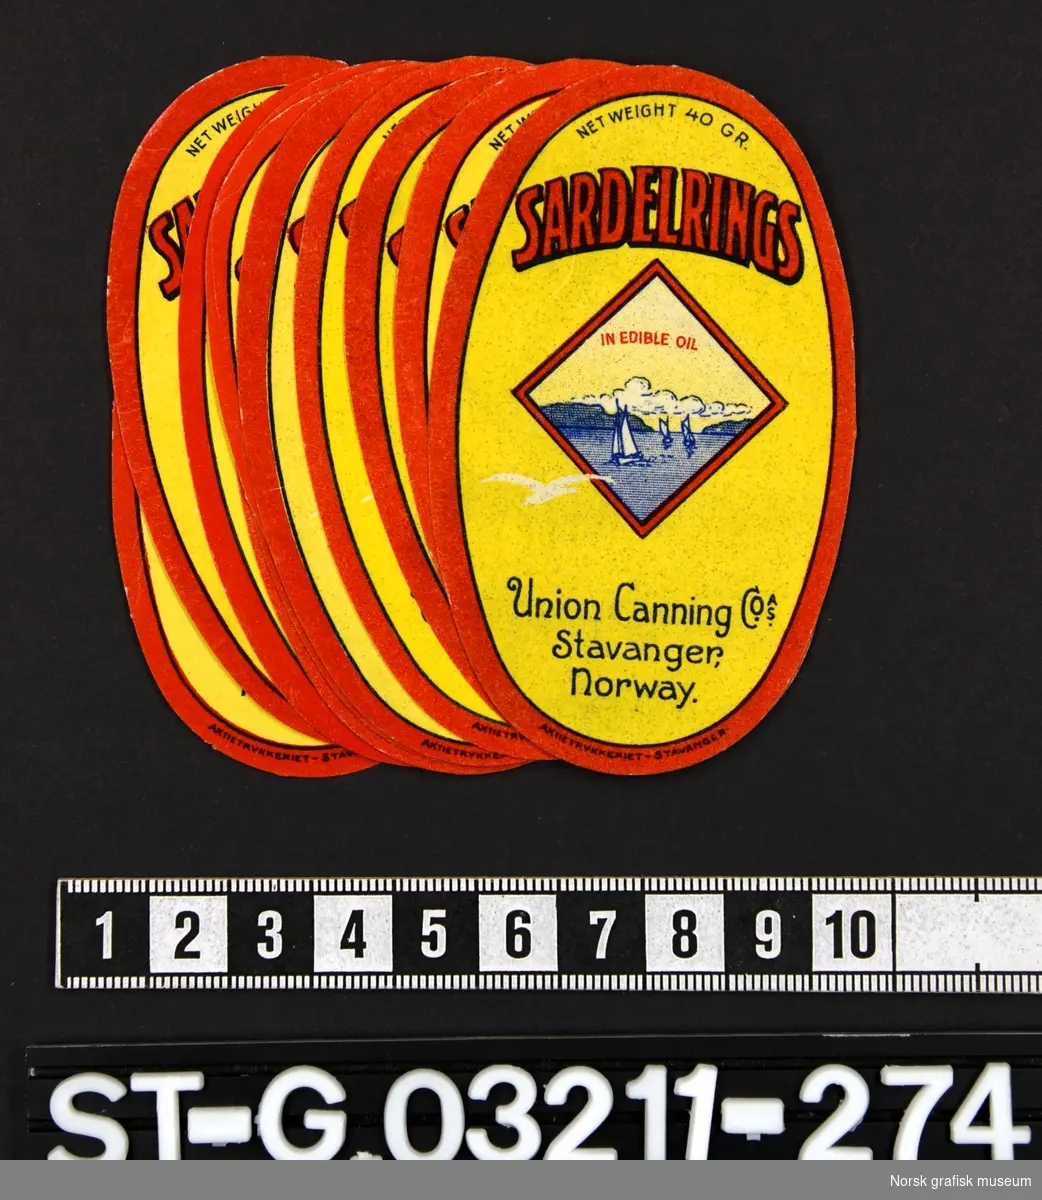 Mindre ovale etiketter i rødt og gult. Et motiv med seilbåter er midt på etiketten i en firkantet ramme. 

"Sardelrings in edible oil"